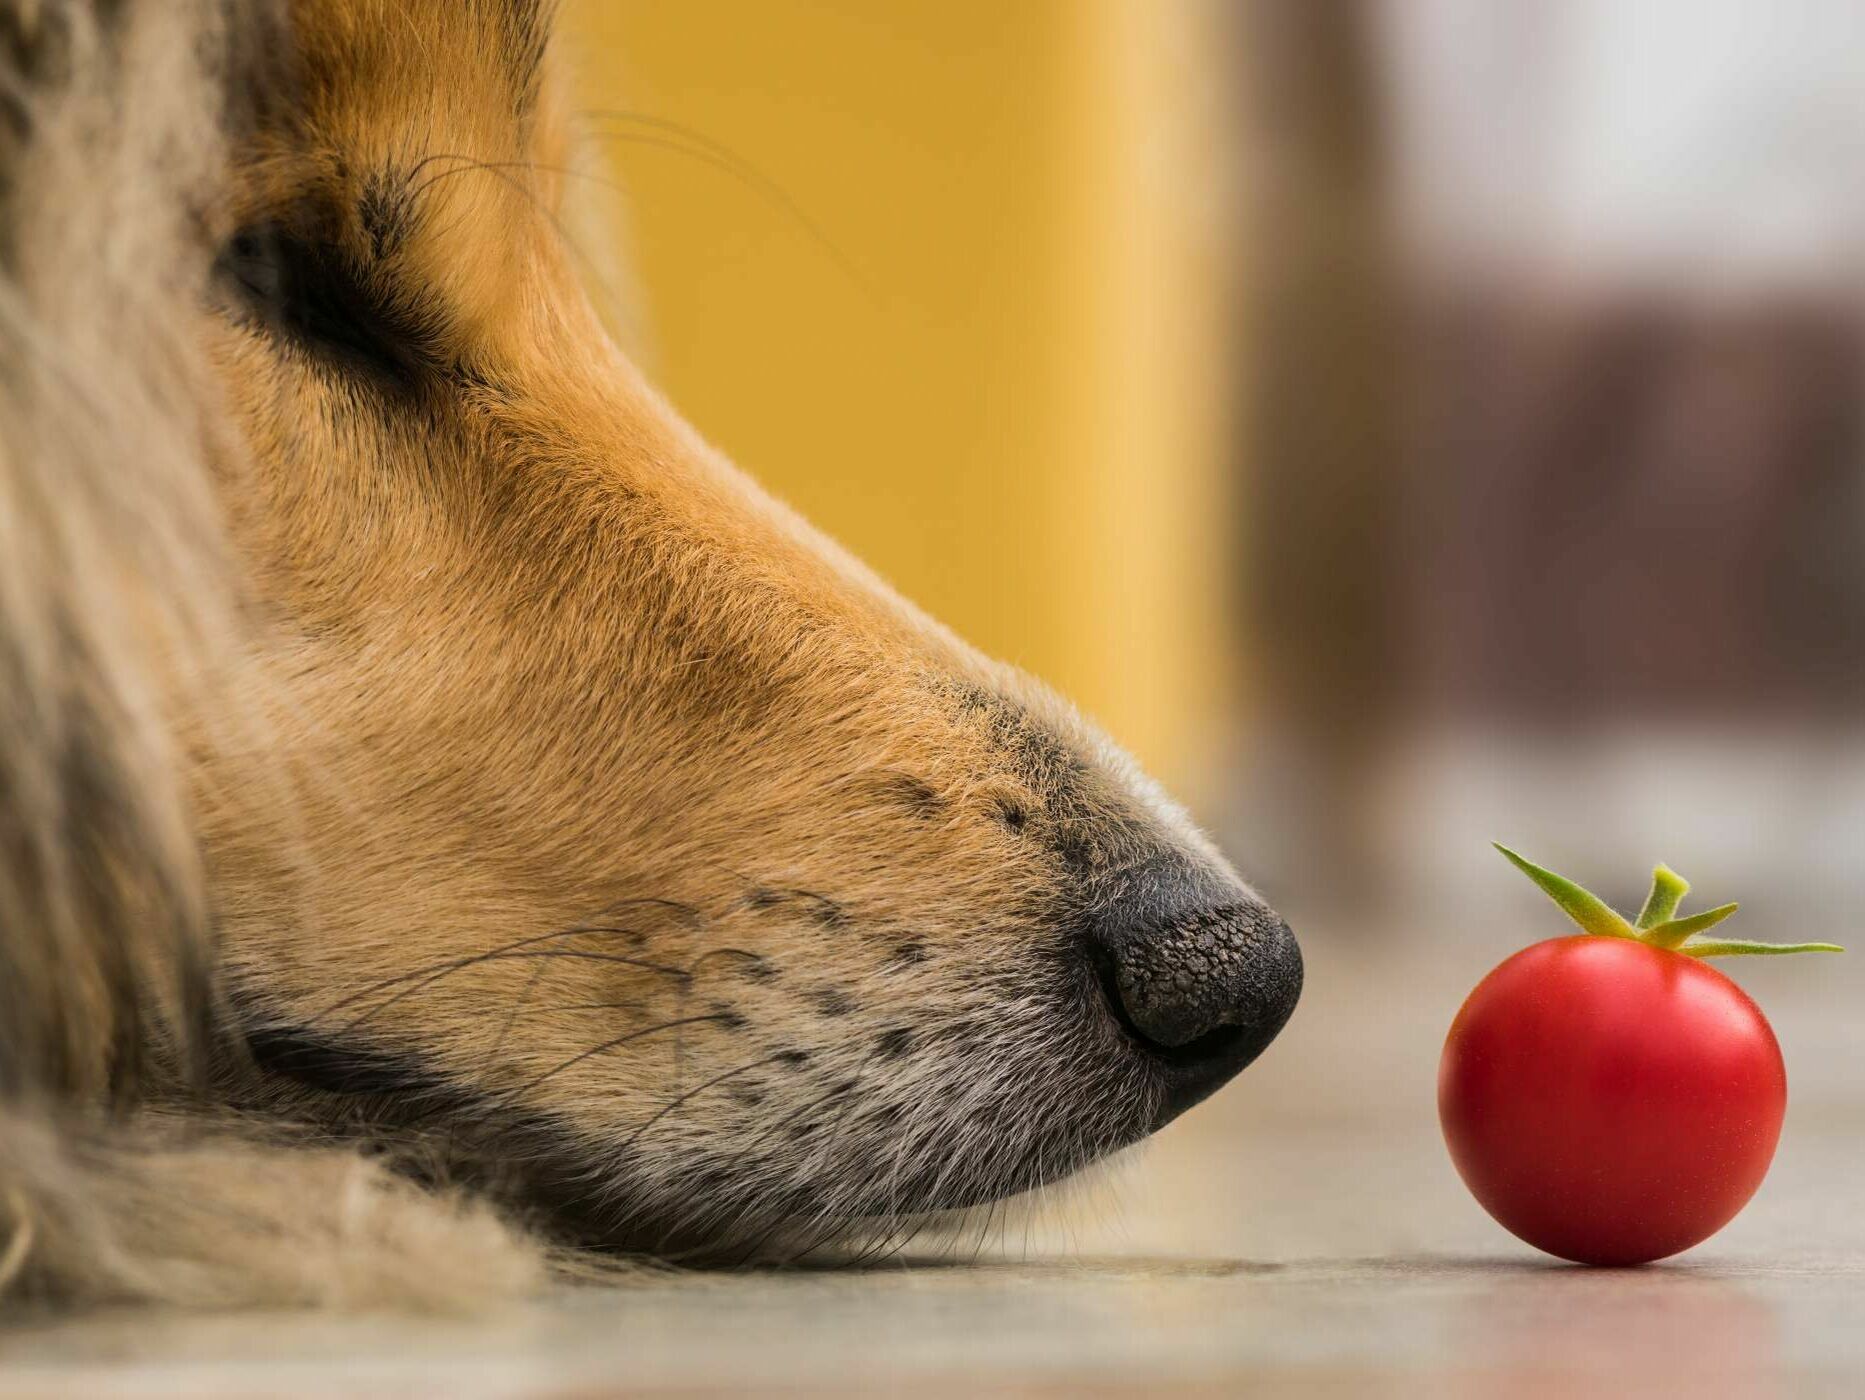 Tomaten für Hunde? Besser nicht!